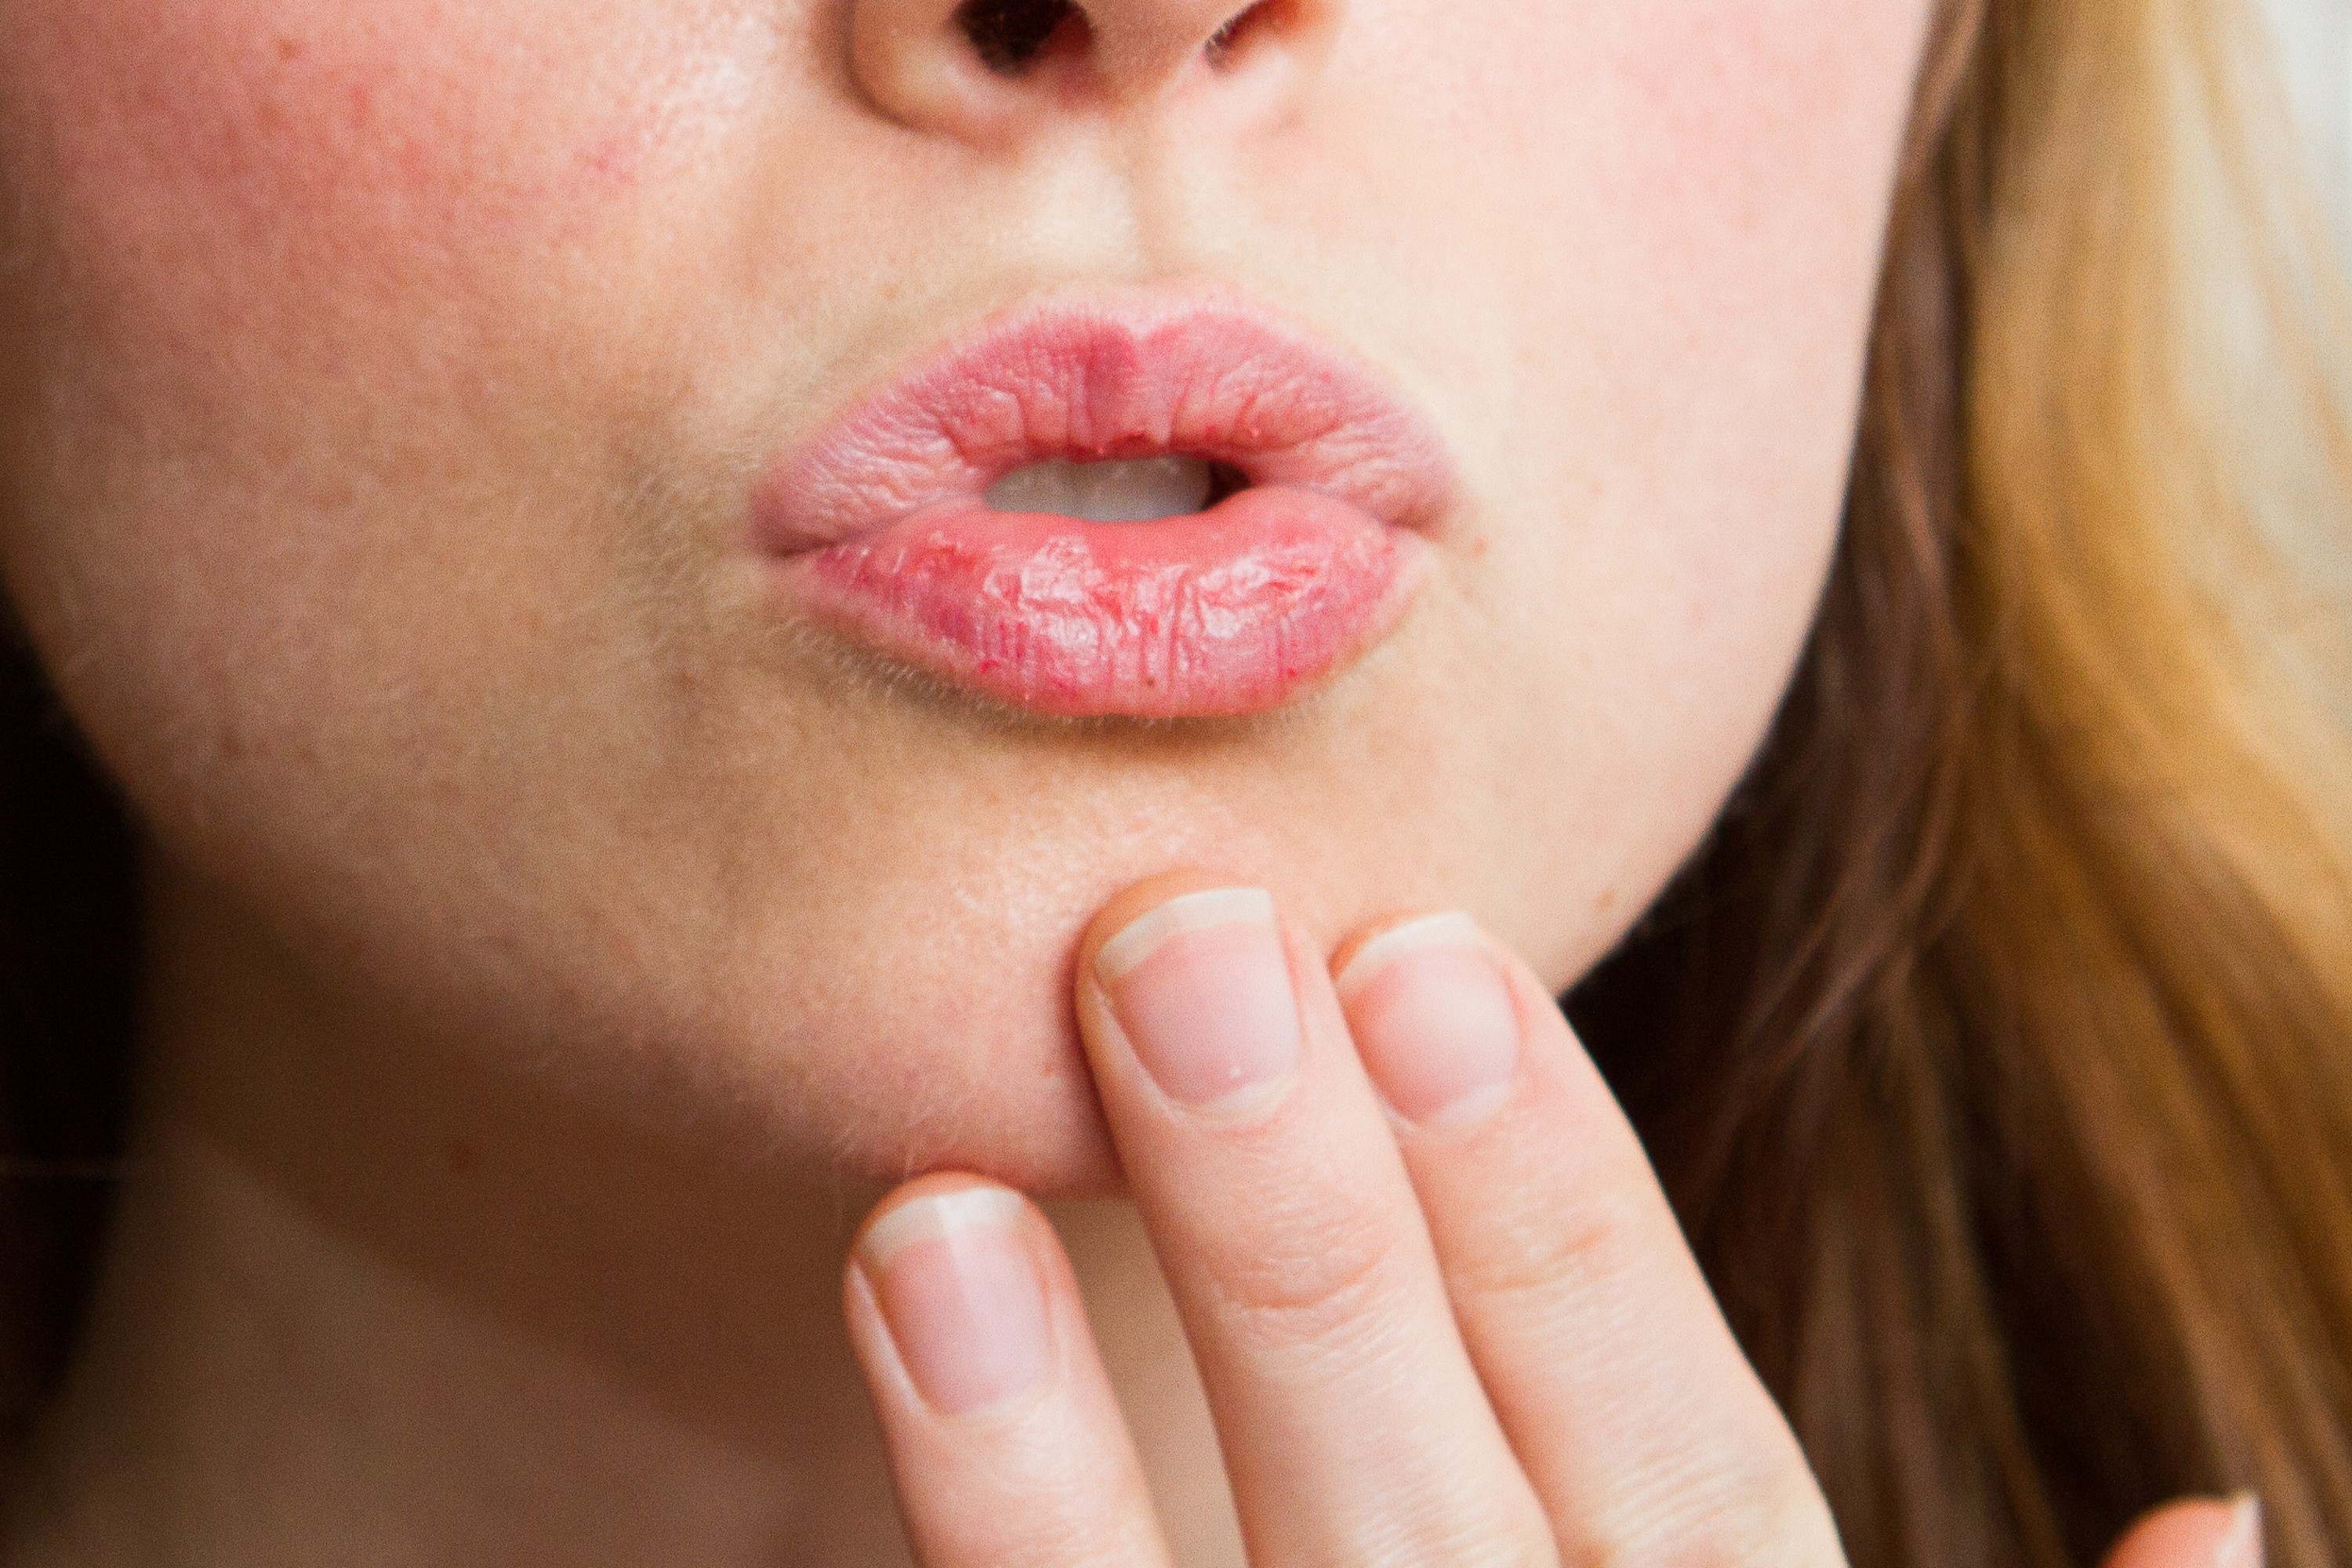 Шелушатся губы: что делать и как лечить, чтобы избежать трещин и воспаления